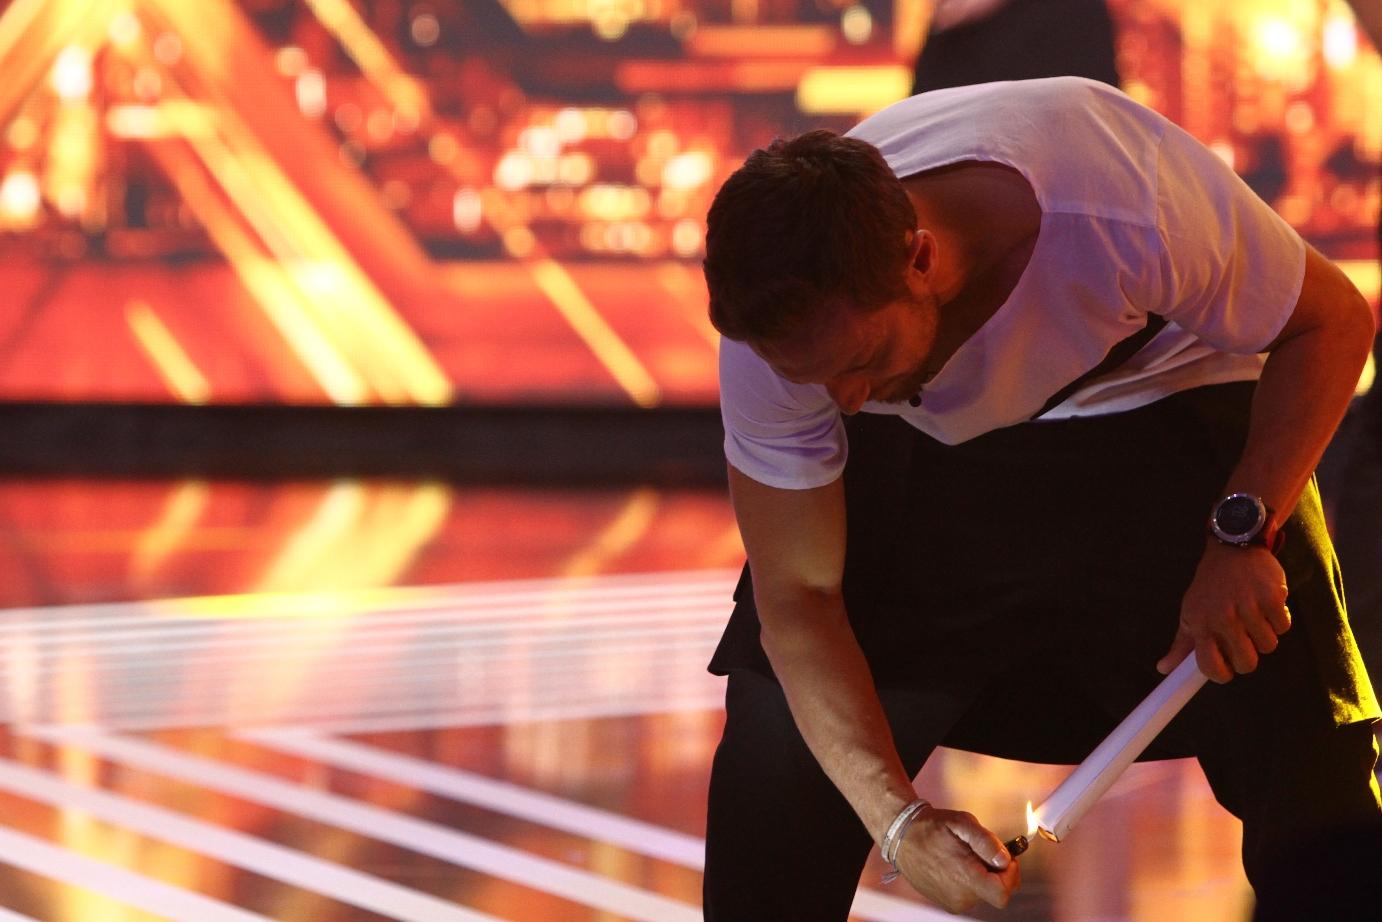 Răzvan şi Dani au dat startul unei probe de atletism pe scena X Factor. IMAGINI inedite